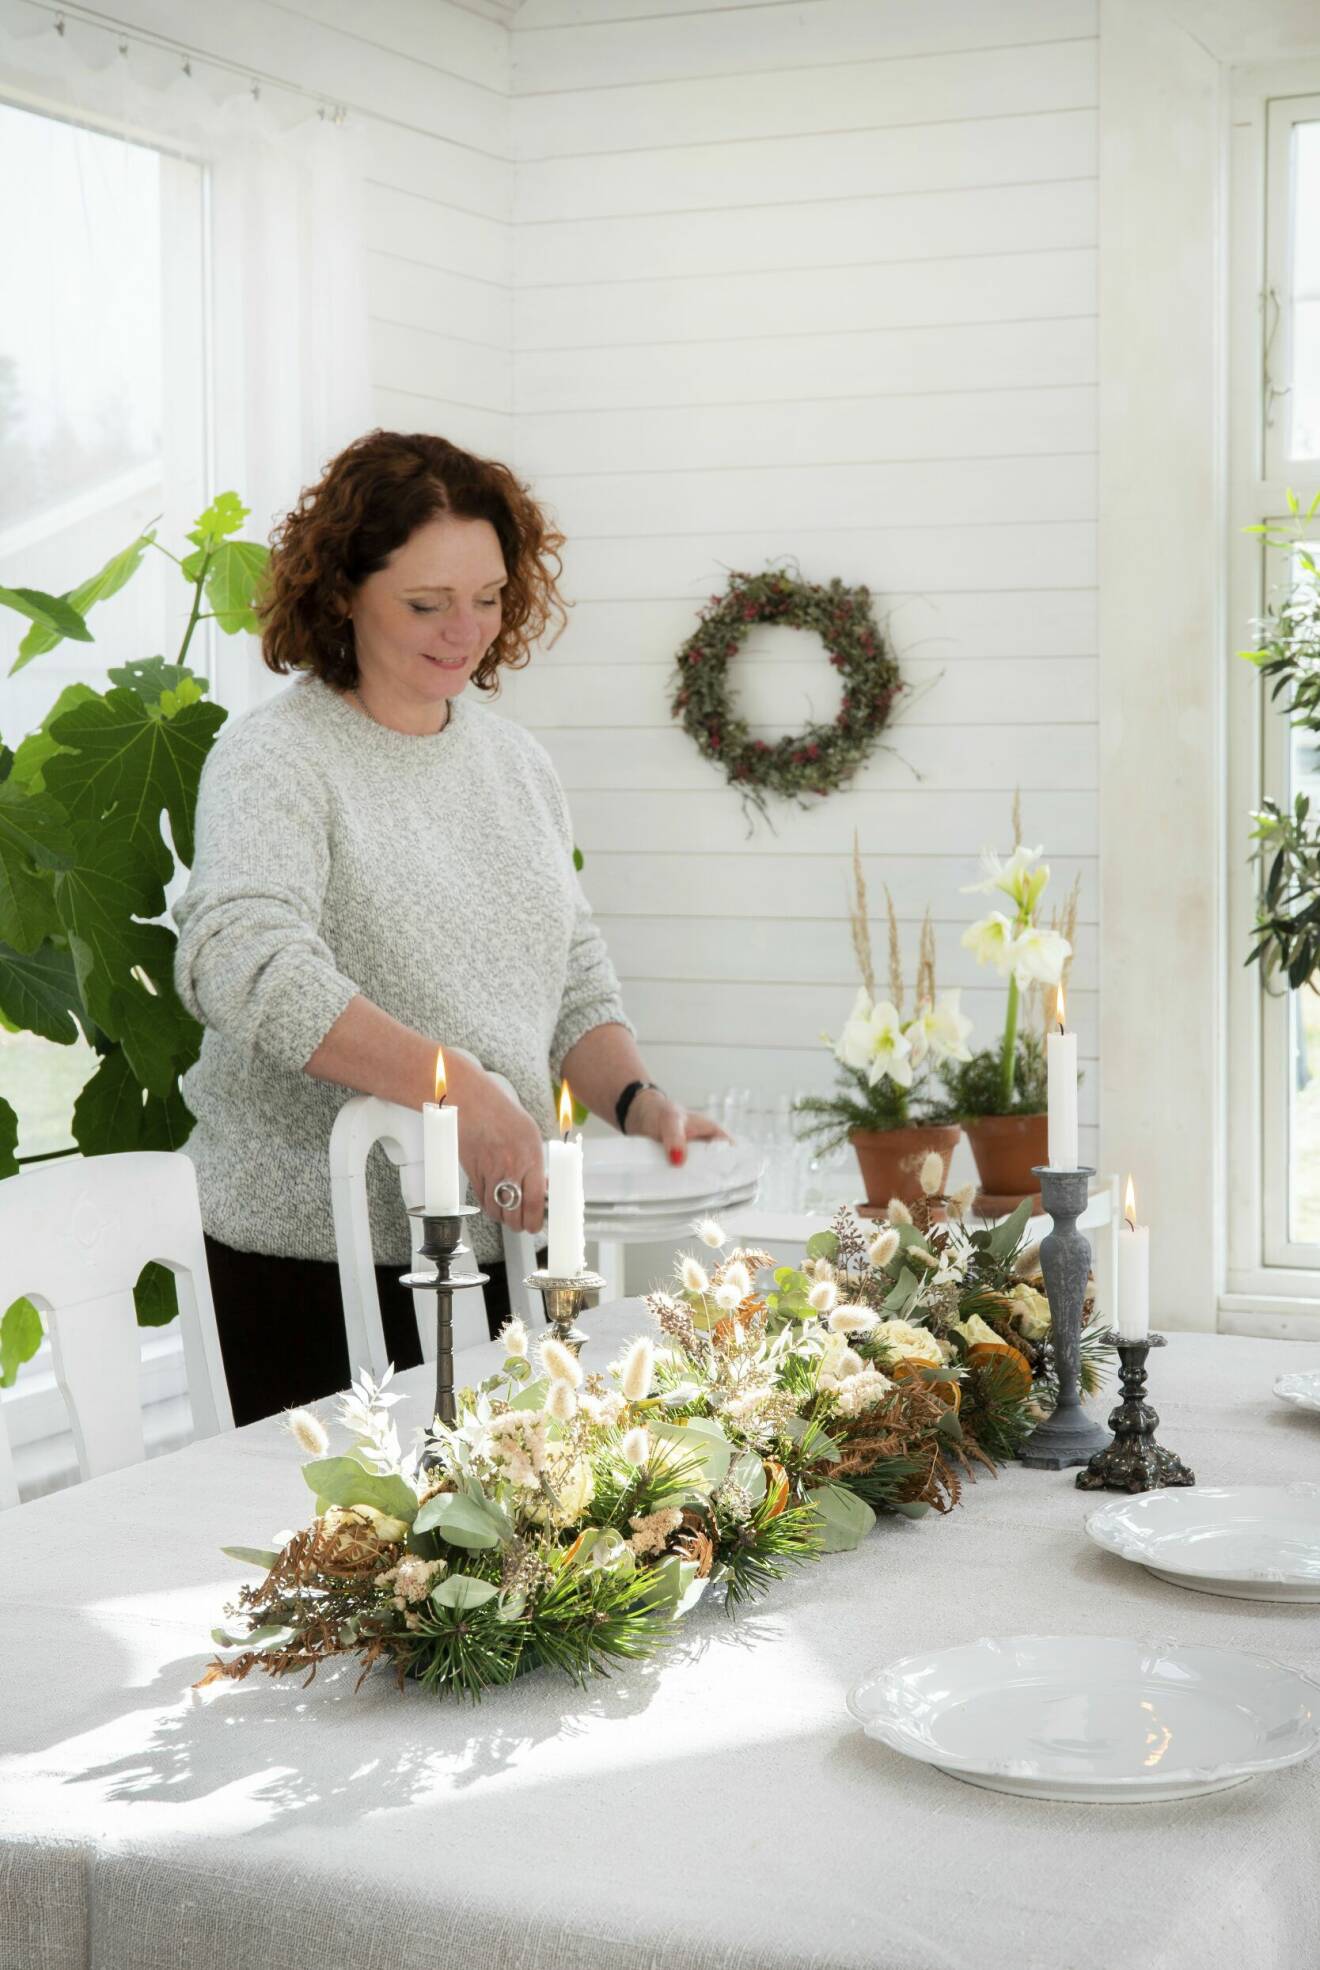 En kvinna dukar ett bord med en bordsdekoration av torkade blommor och växter.